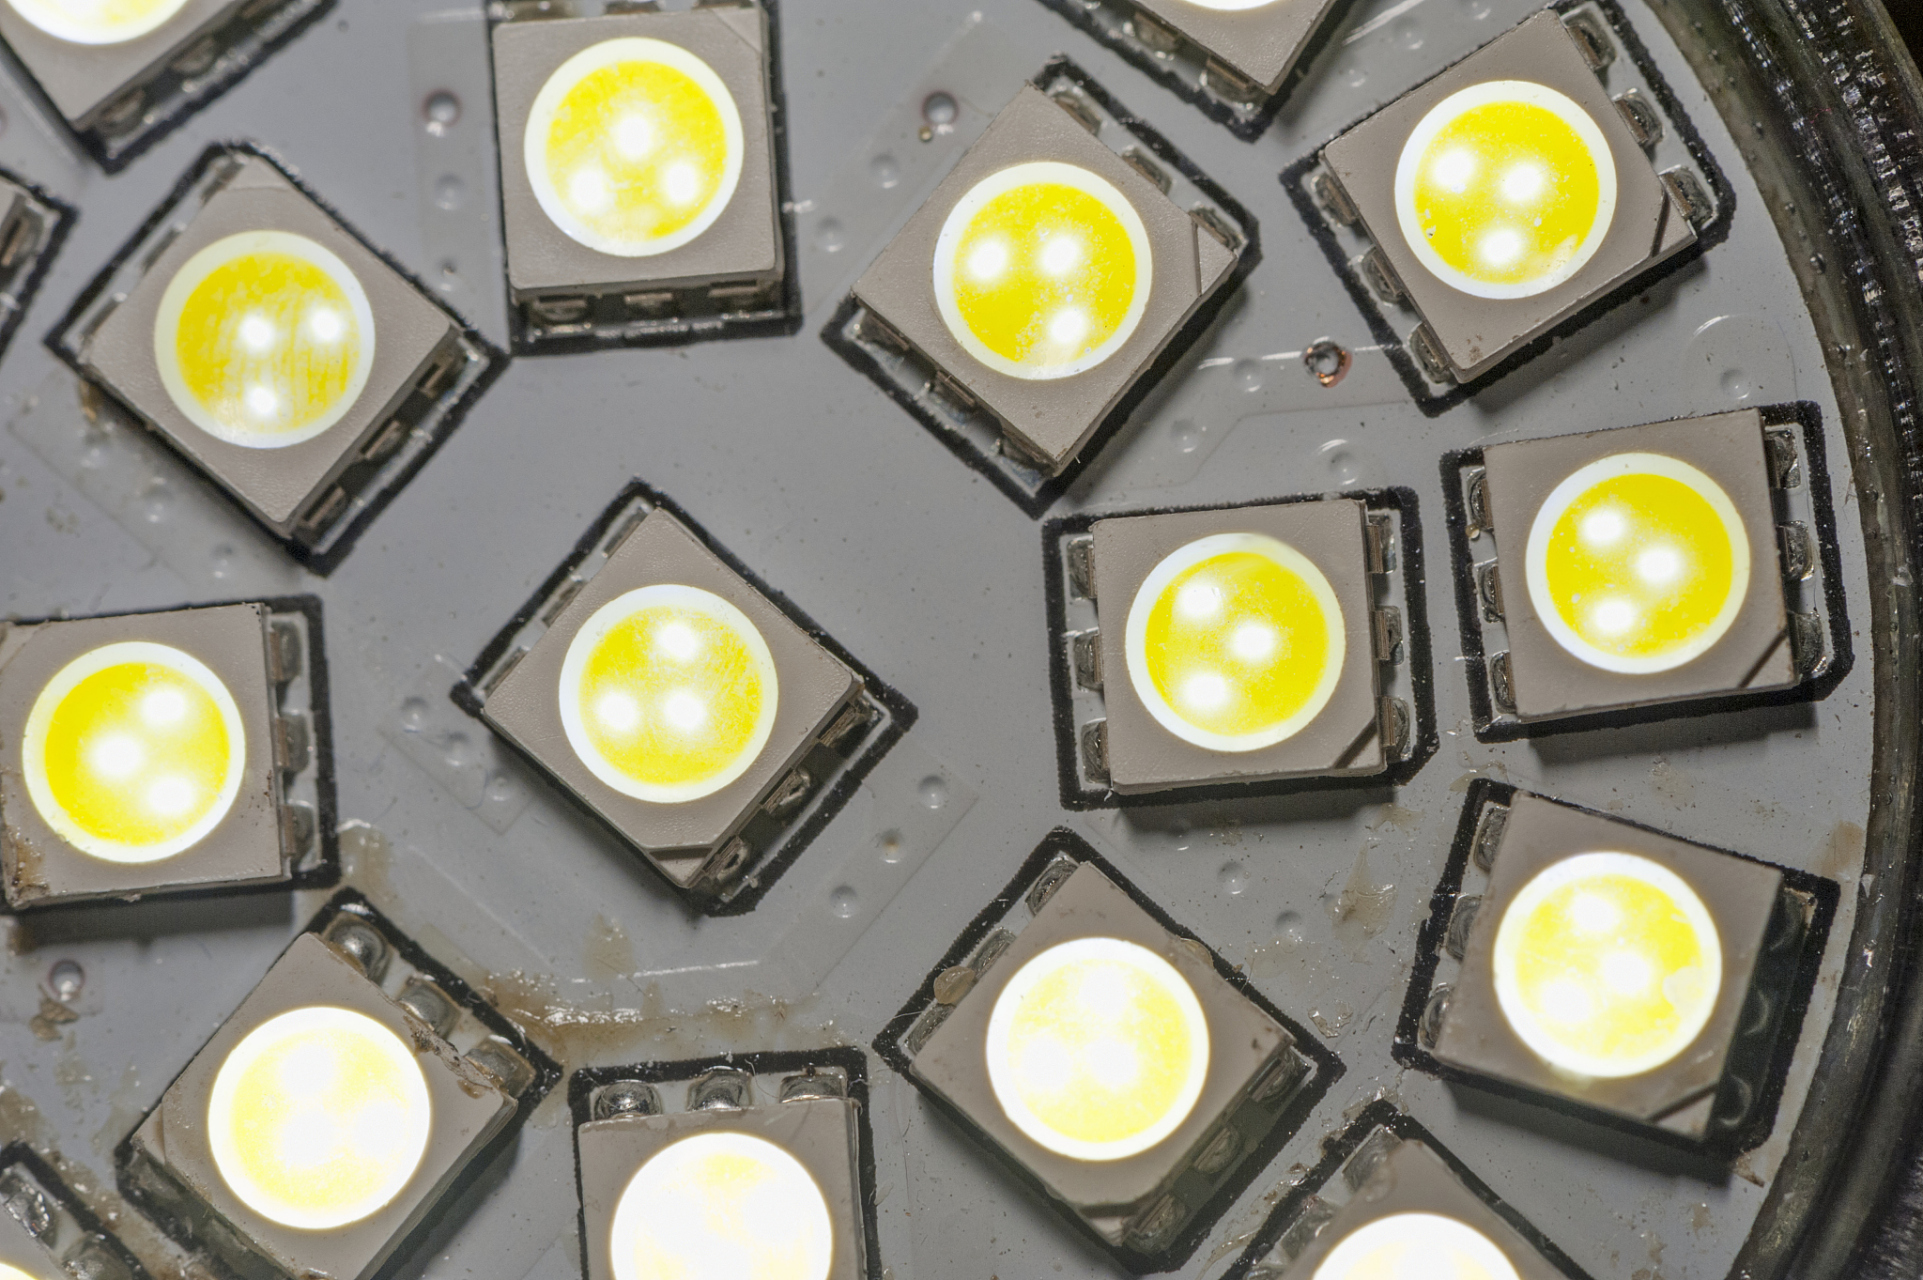 led灯珠在照明领域的应用已经越来越广泛,其高效节能,长寿命,环保等